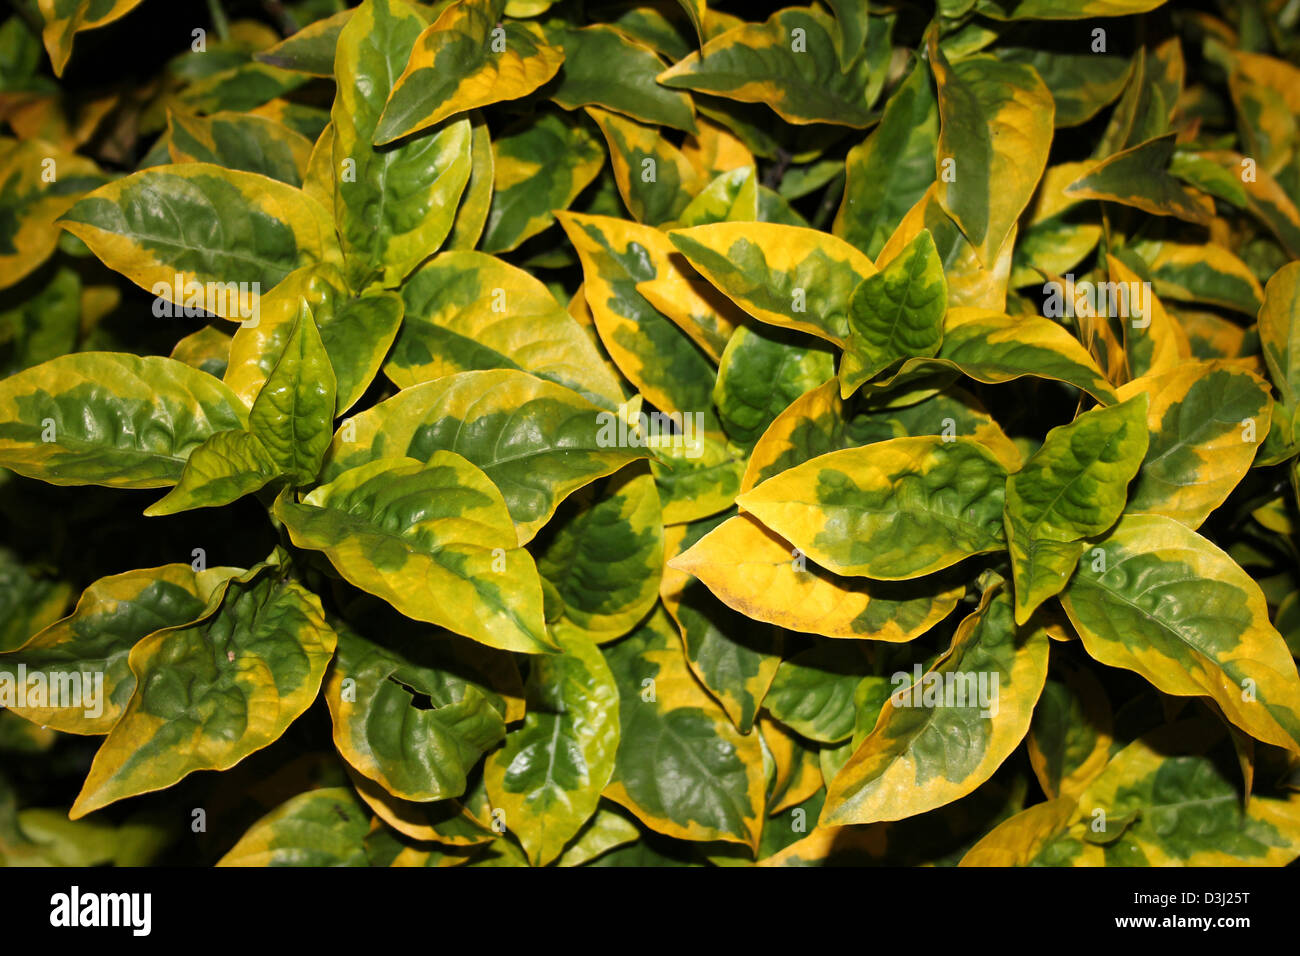 Gelb und grün Blätter von der Strauch immergrüne Euonymus - Euonymus Japonicus Vielzahl Ovatus Aureus Stockfoto